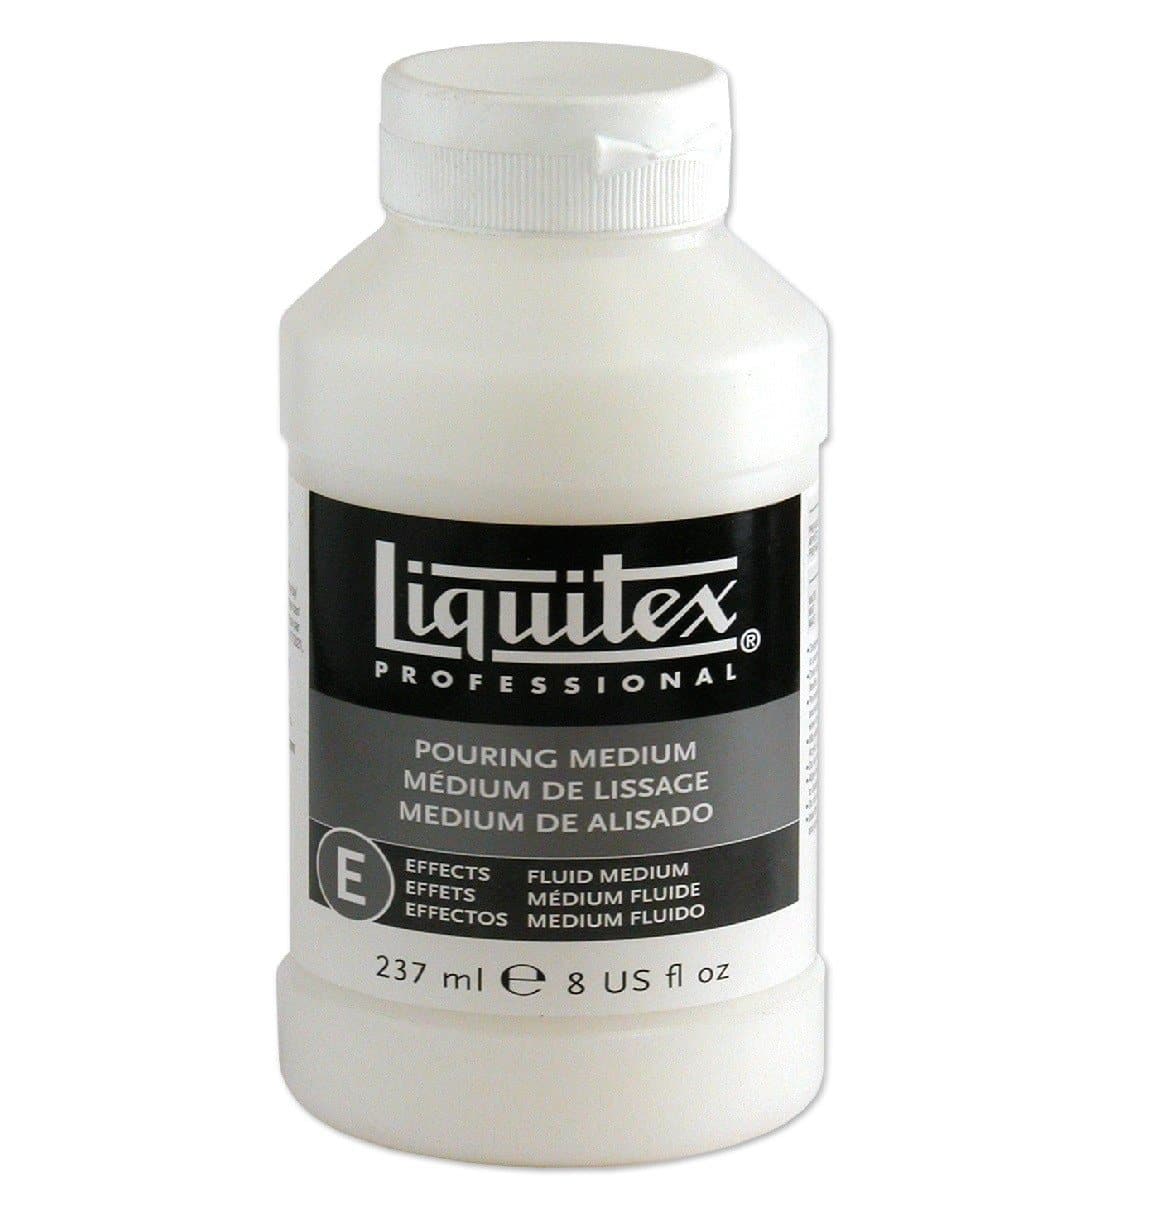 Liquitex - Medio de alisado (pouring) profesional